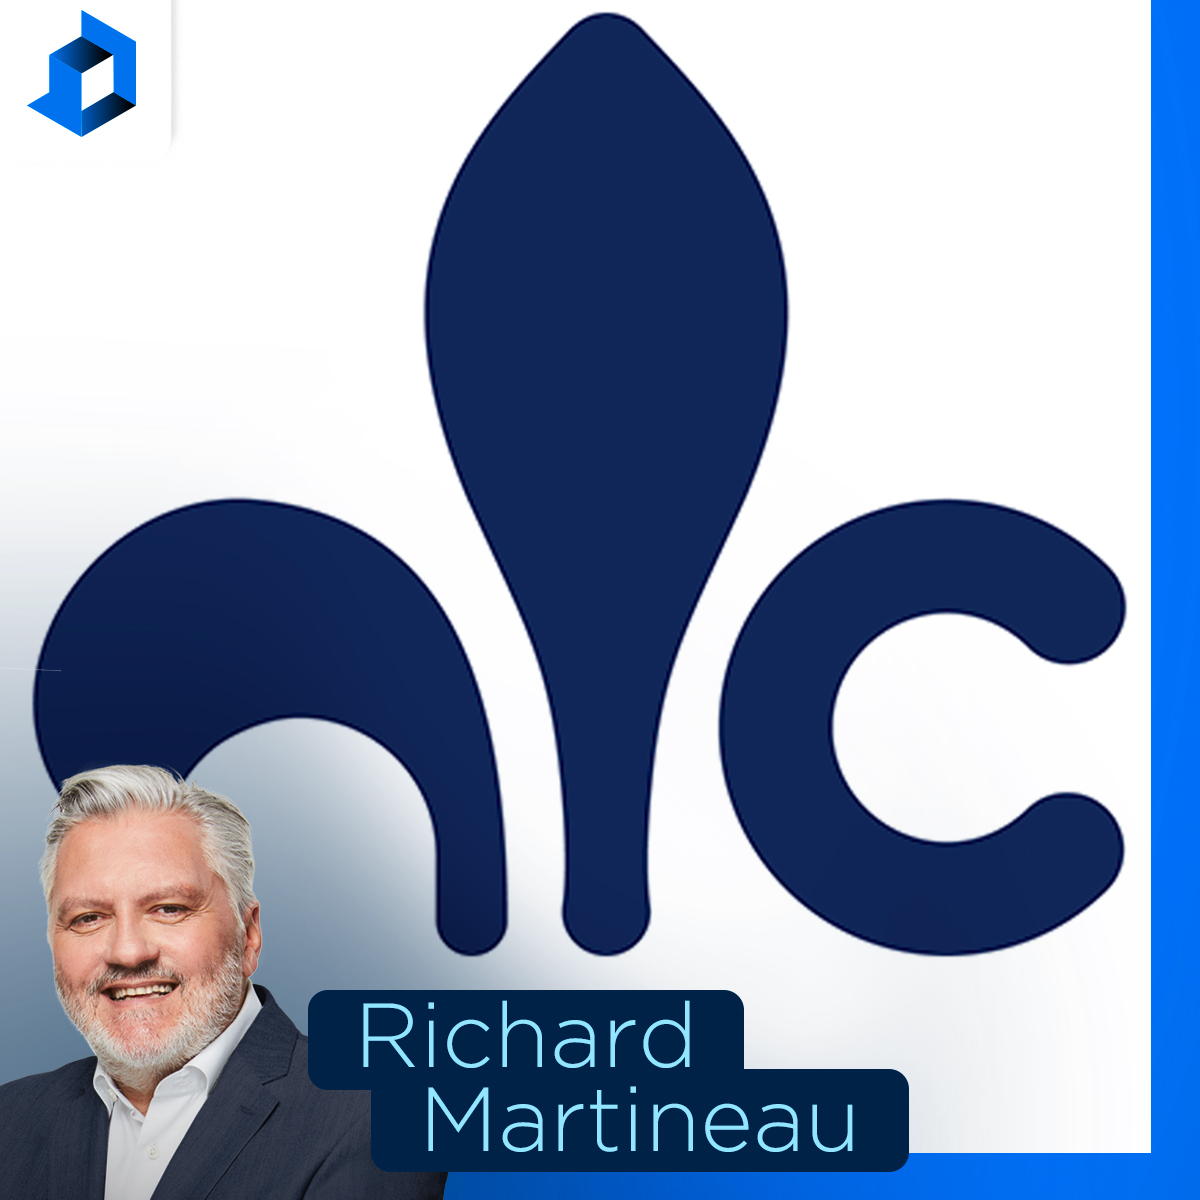 «Le journalisme est de plus en plus militant au Québec», dit Éric Duhaime, chef du Parti conservateur du Québec